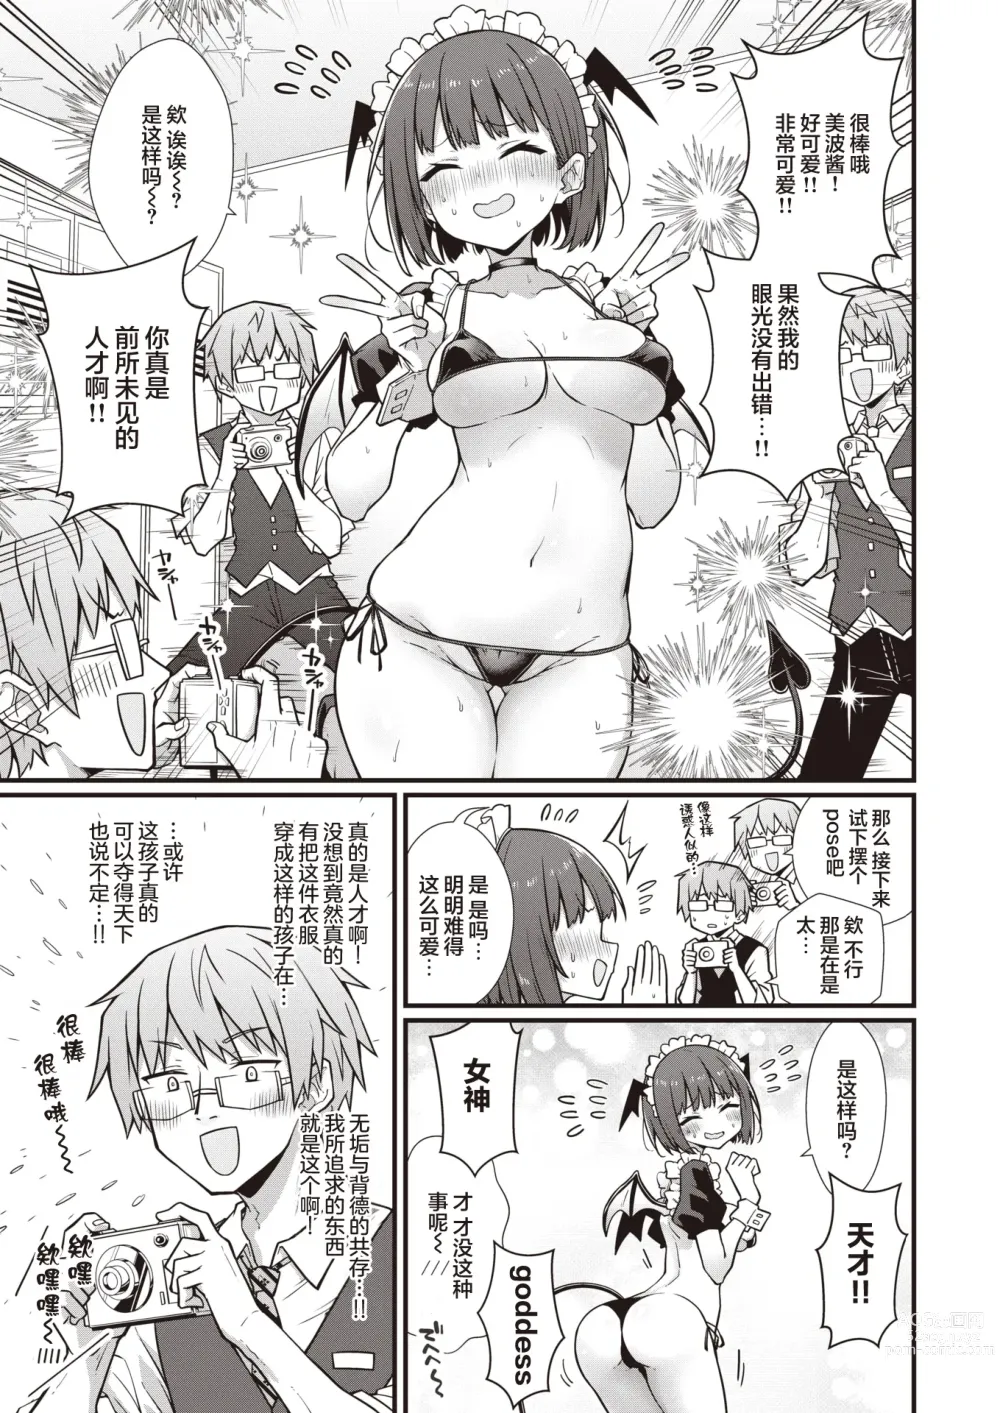 Page 8 of manga Hatarake! Minami-chan!